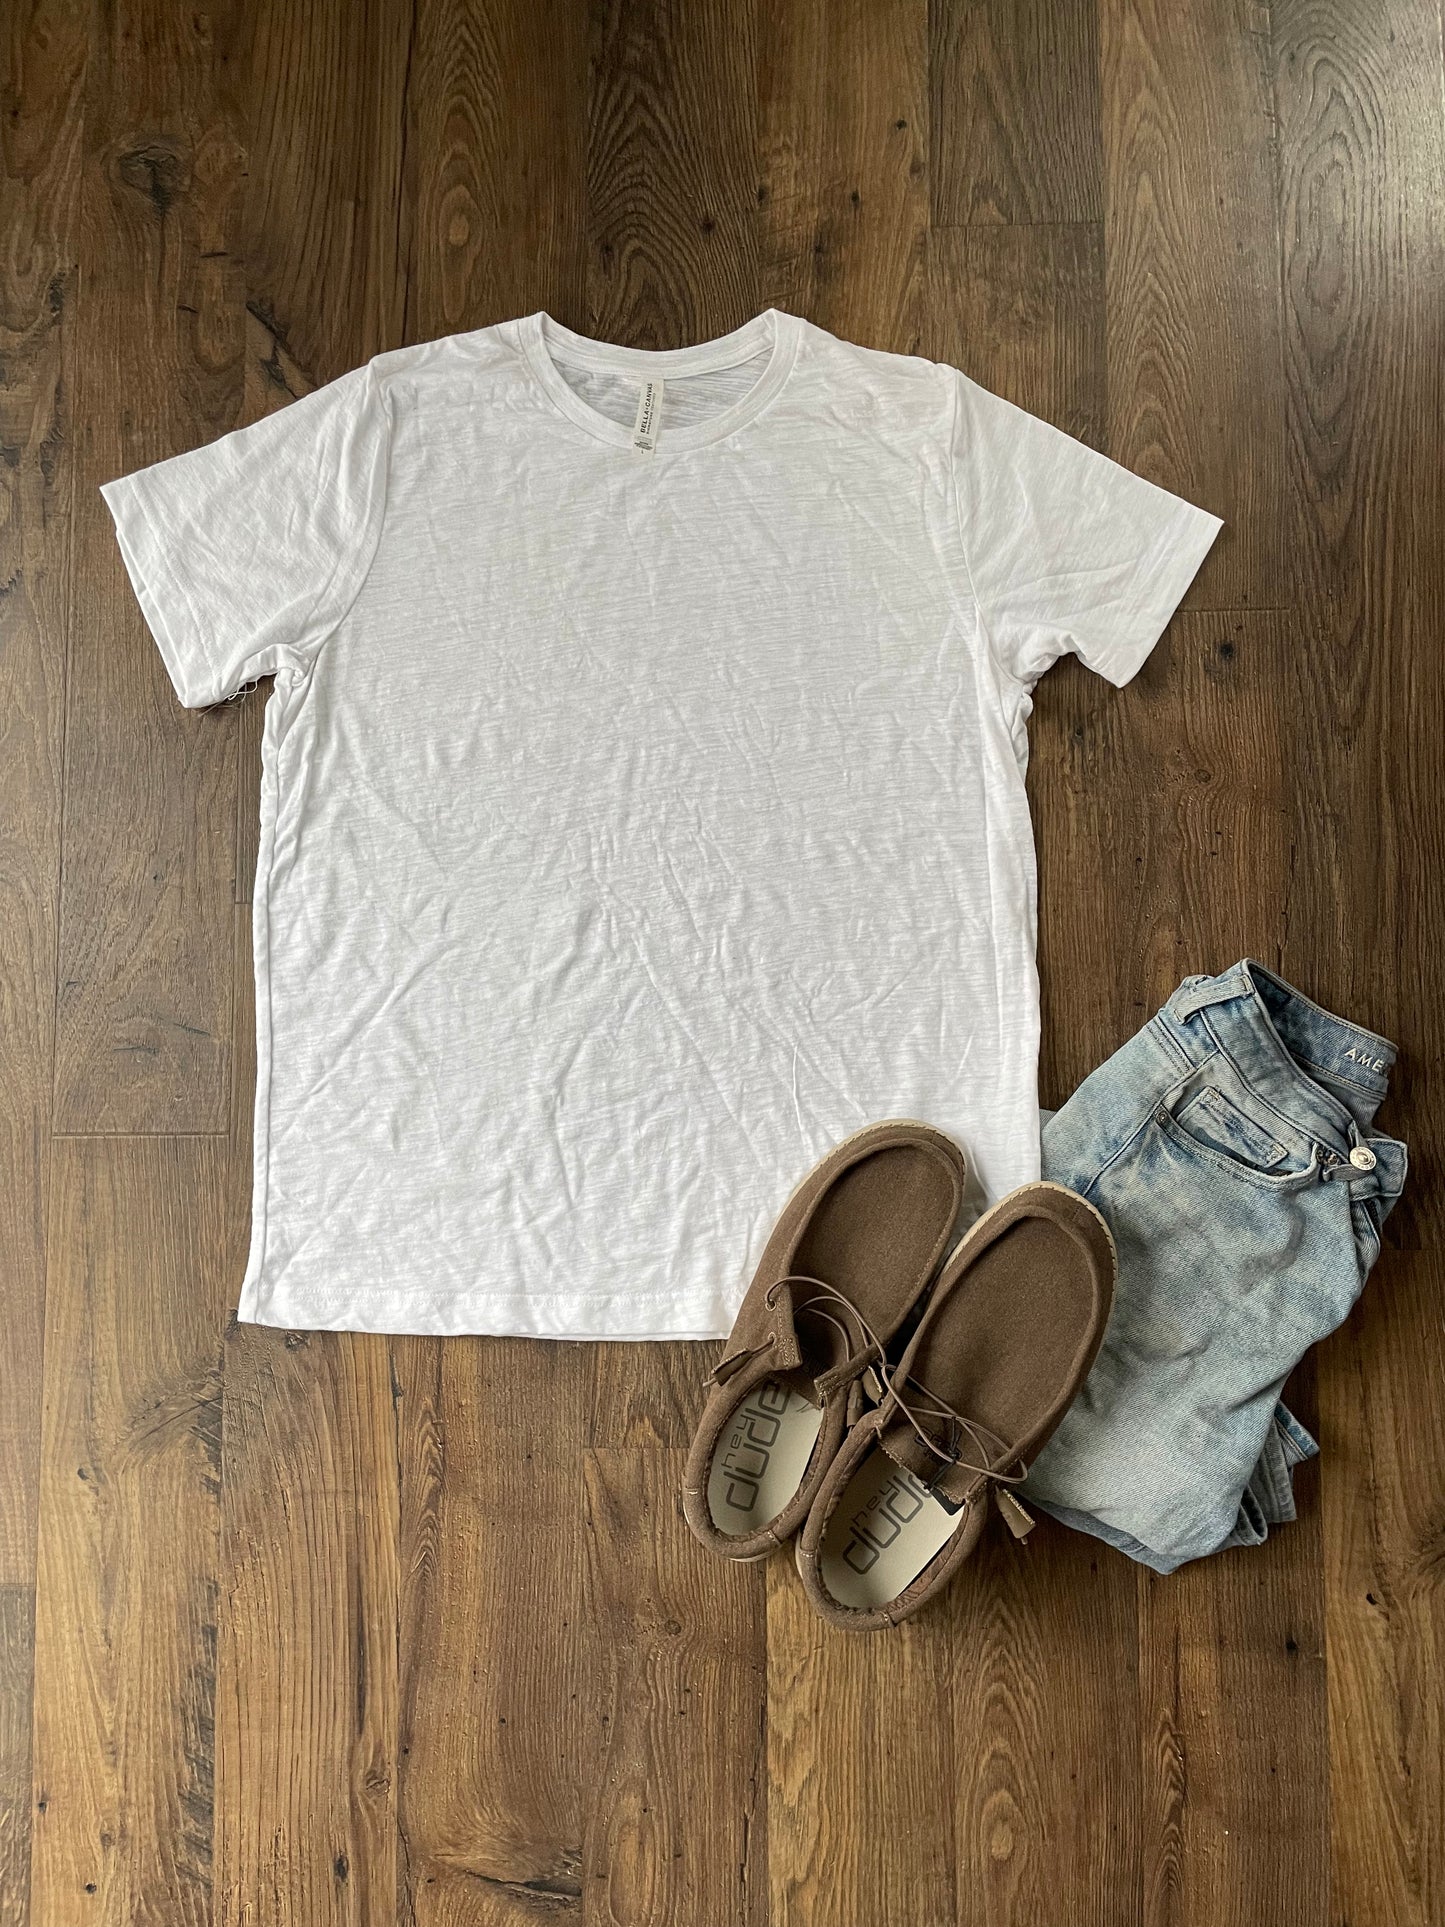 Ivory & Sage town tee shirt